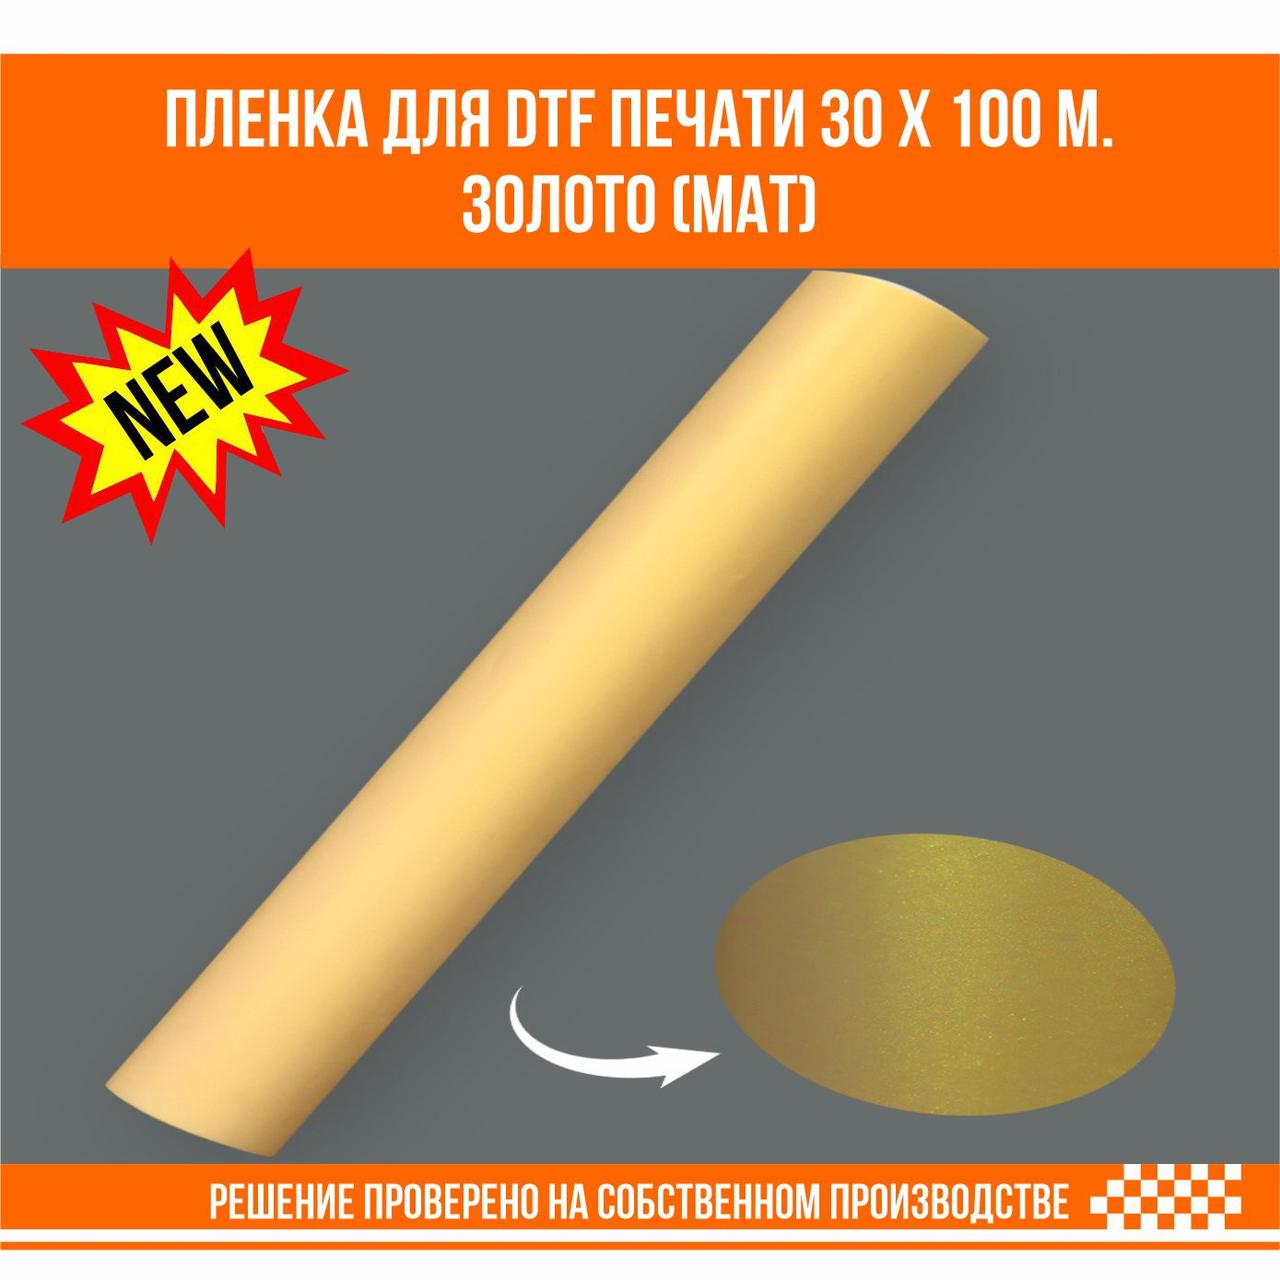 Пленка для DTF печати на ткани золото матовое 30 х 100 м., фото 1